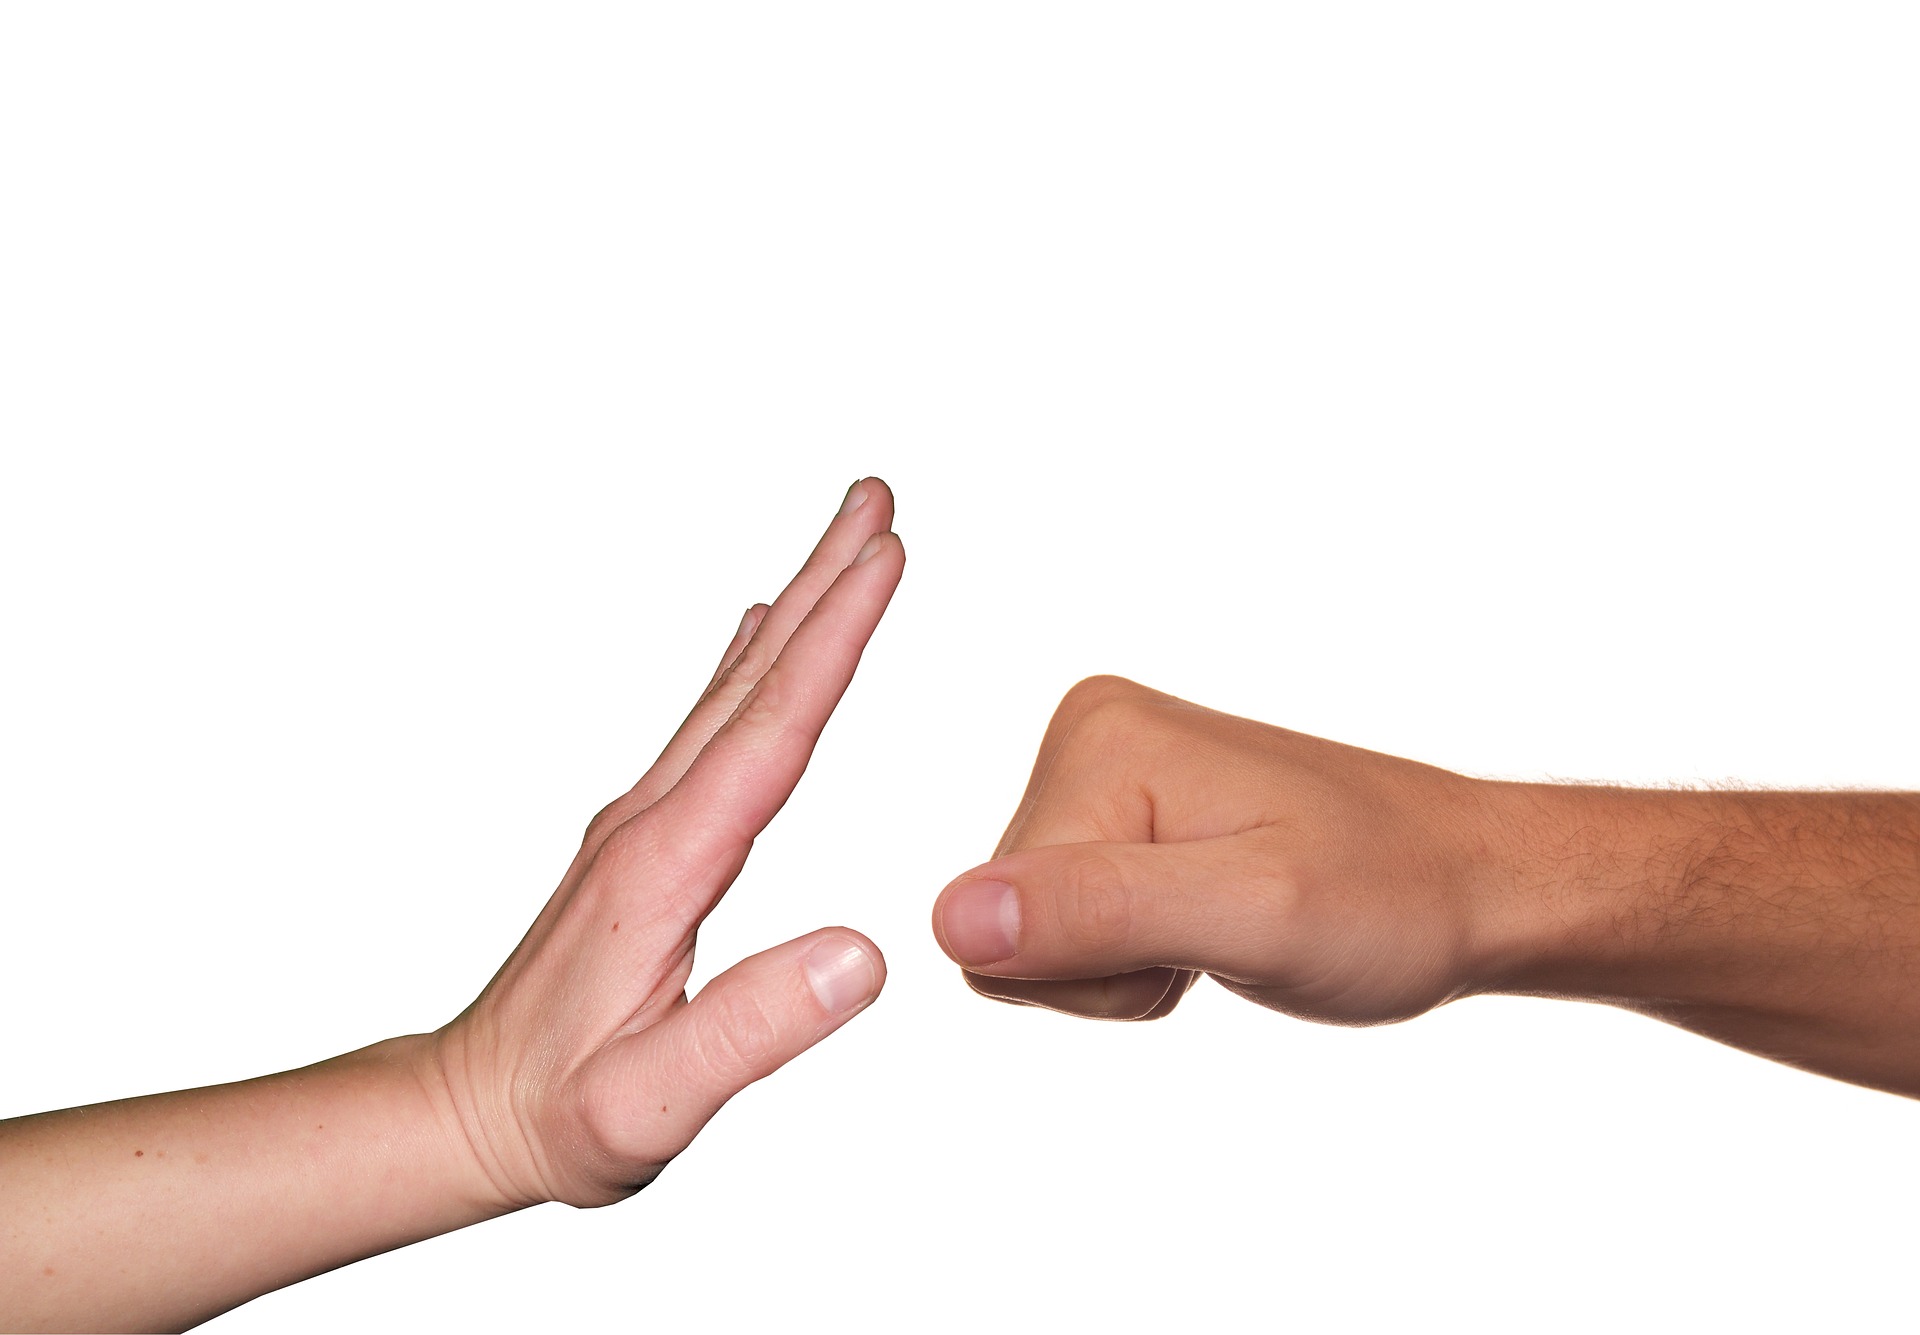 Zdjęcie przedstawia dwie dłonie (jedna otwarta, druga złożona w pięść) pokazujące gest sprzeciwu wobec przemocy fizycznej.